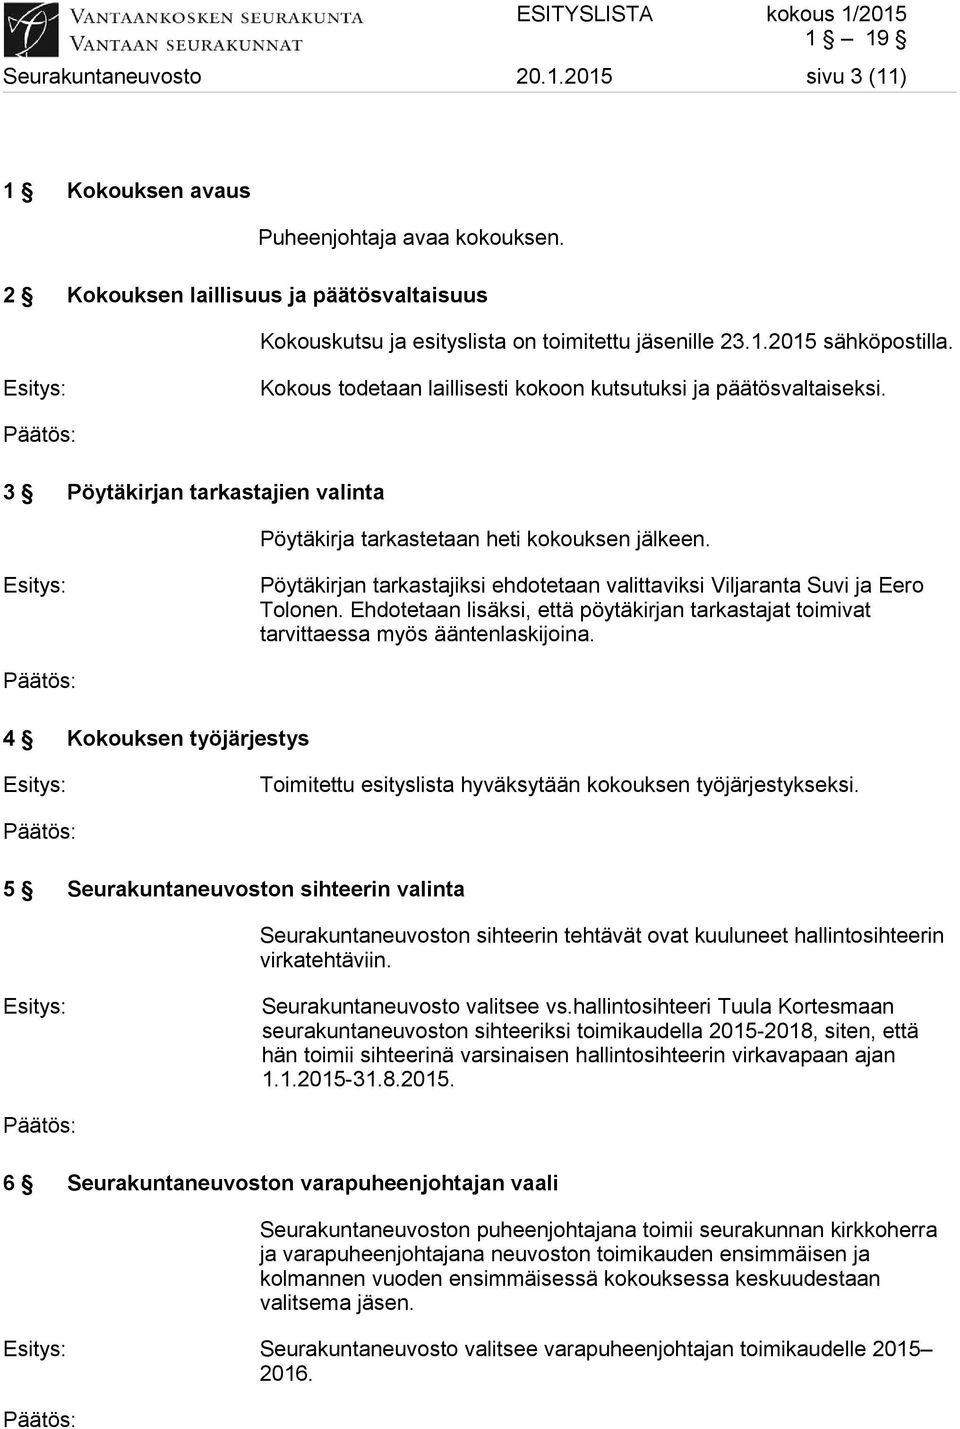 Pöytäkirjan tarkastajiksi ehdotetaan valittaviksi Viljaranta Suvi ja Eero Tolonen. Ehdotetaan lisäksi, että pöytäkirjan tarkastajat toimivat tarvittaessa myös ääntenlaskijoina.